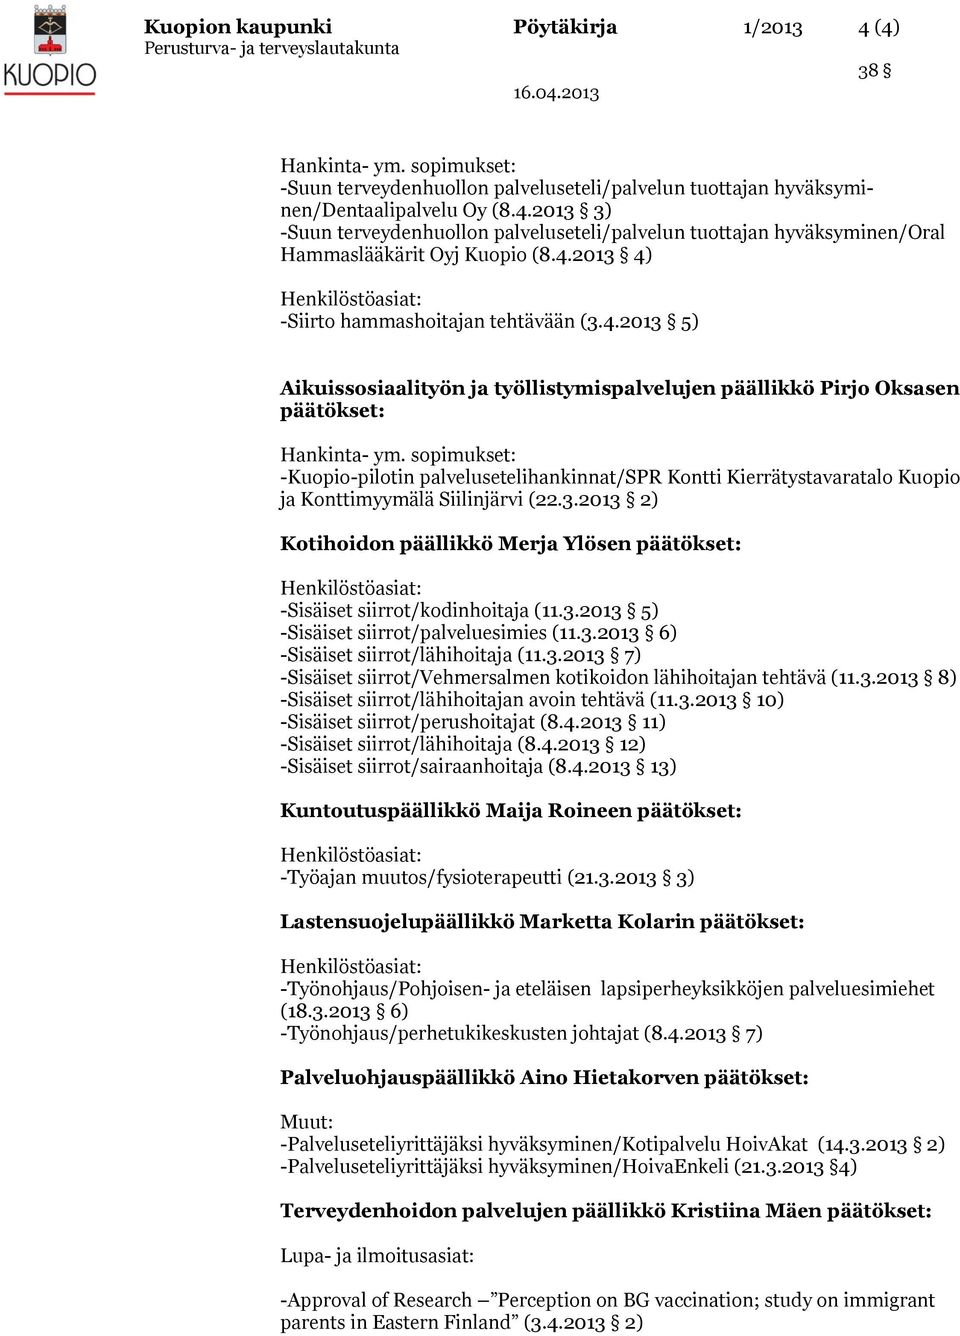 3.2013 2) Kotihoidon päällikkö Merja Ylösen päätökset: -Sisäiset siirrot/kodinhoitaja (11.3.2013 5) -Sisäiset siirrot/palveluesimies (11.3.2013 6) -Sisäiset siirrot/lähihoitaja (11.3.2013 7) -Sisäiset siirrot/vehmersalmen kotikoidon lähihoitajan tehtävä (11.